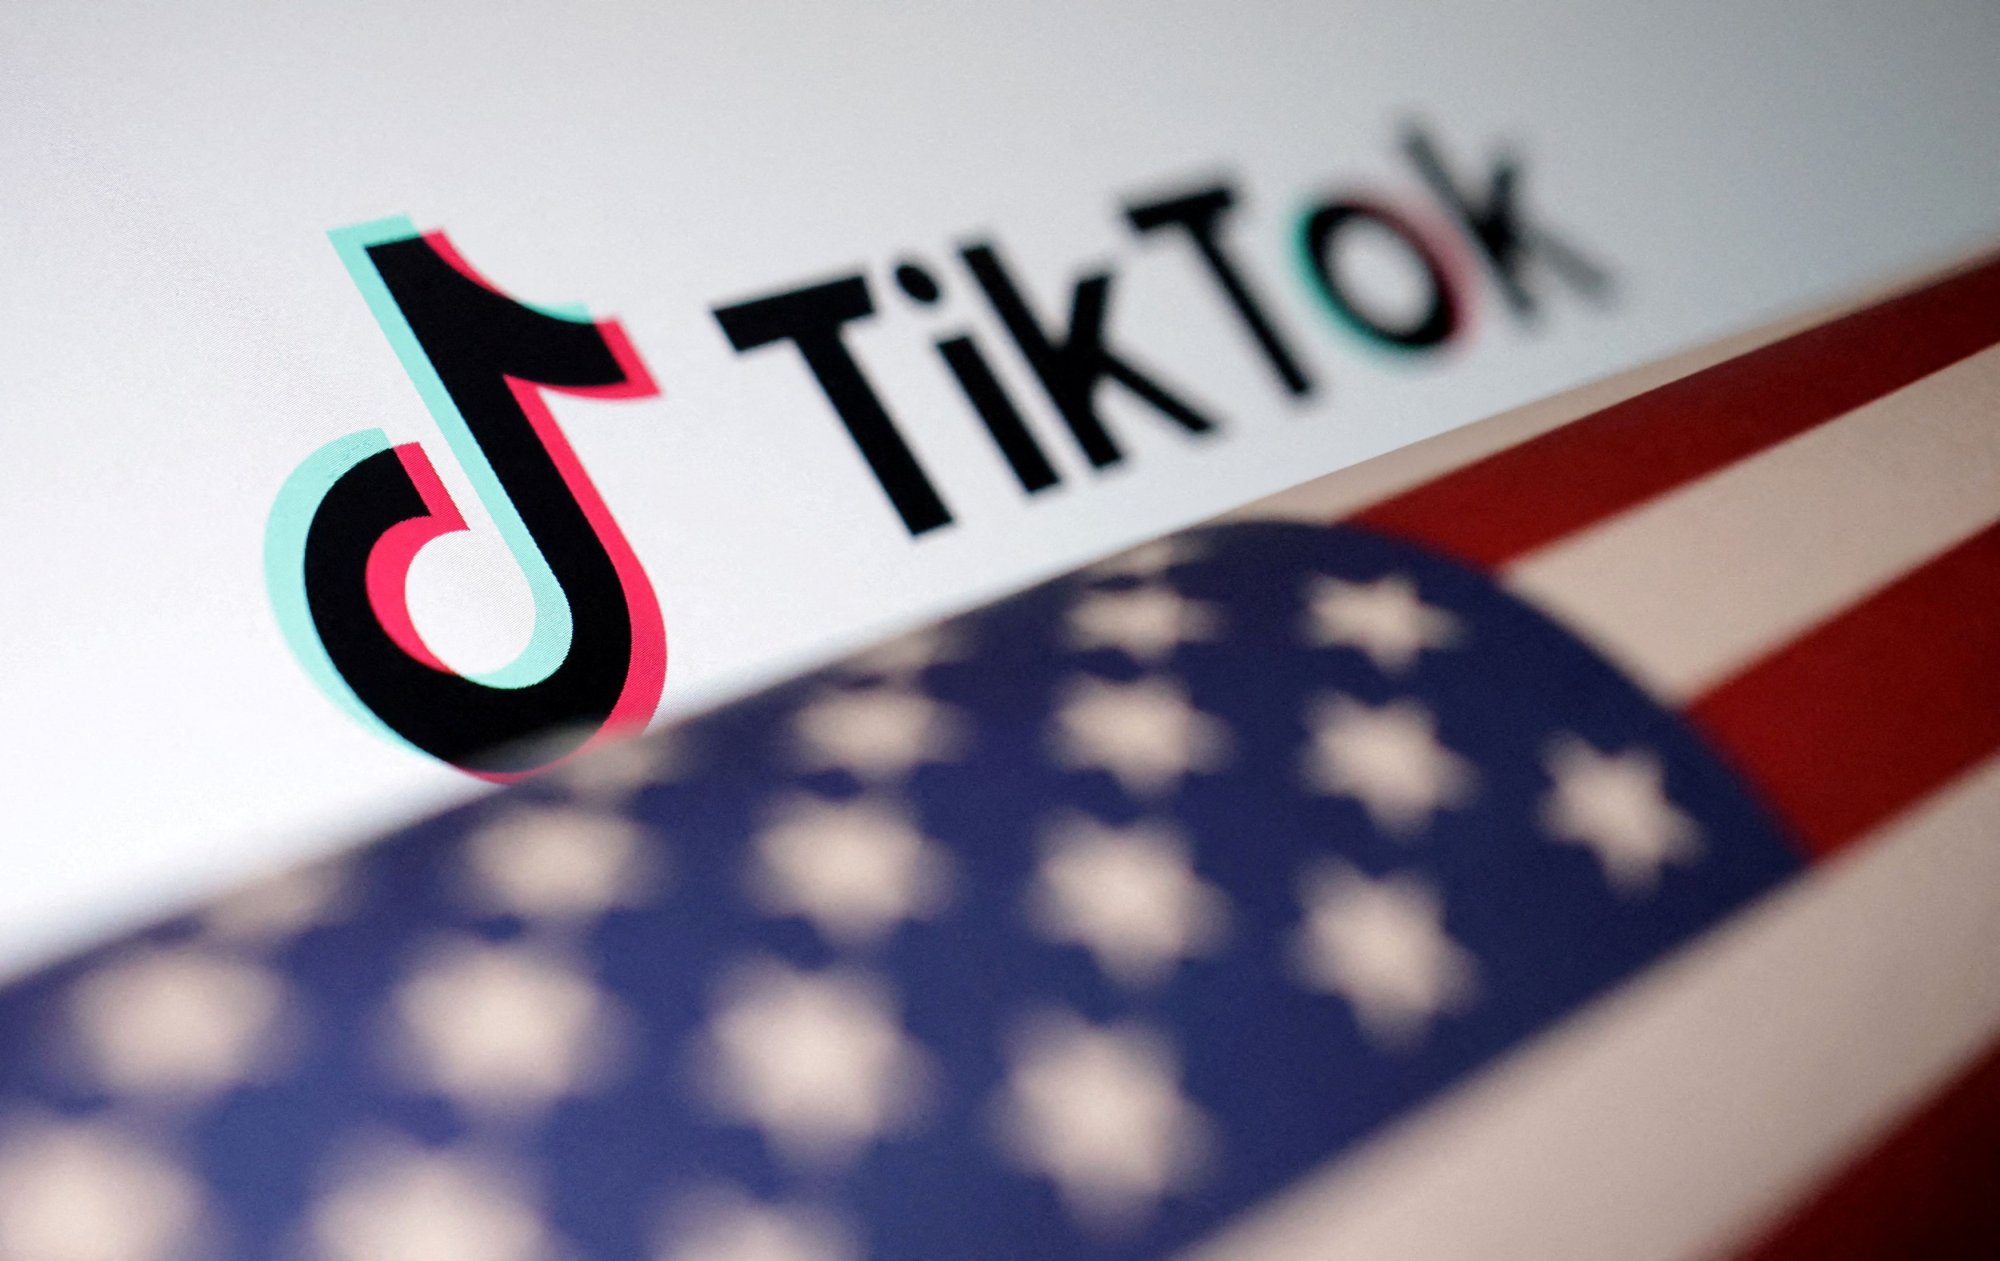 Η απαγόρευση του TikTok και η μεγάλη εικόνα – Το πρόβλημα των ΗΠΑ και η αντίδραση της Κίνας